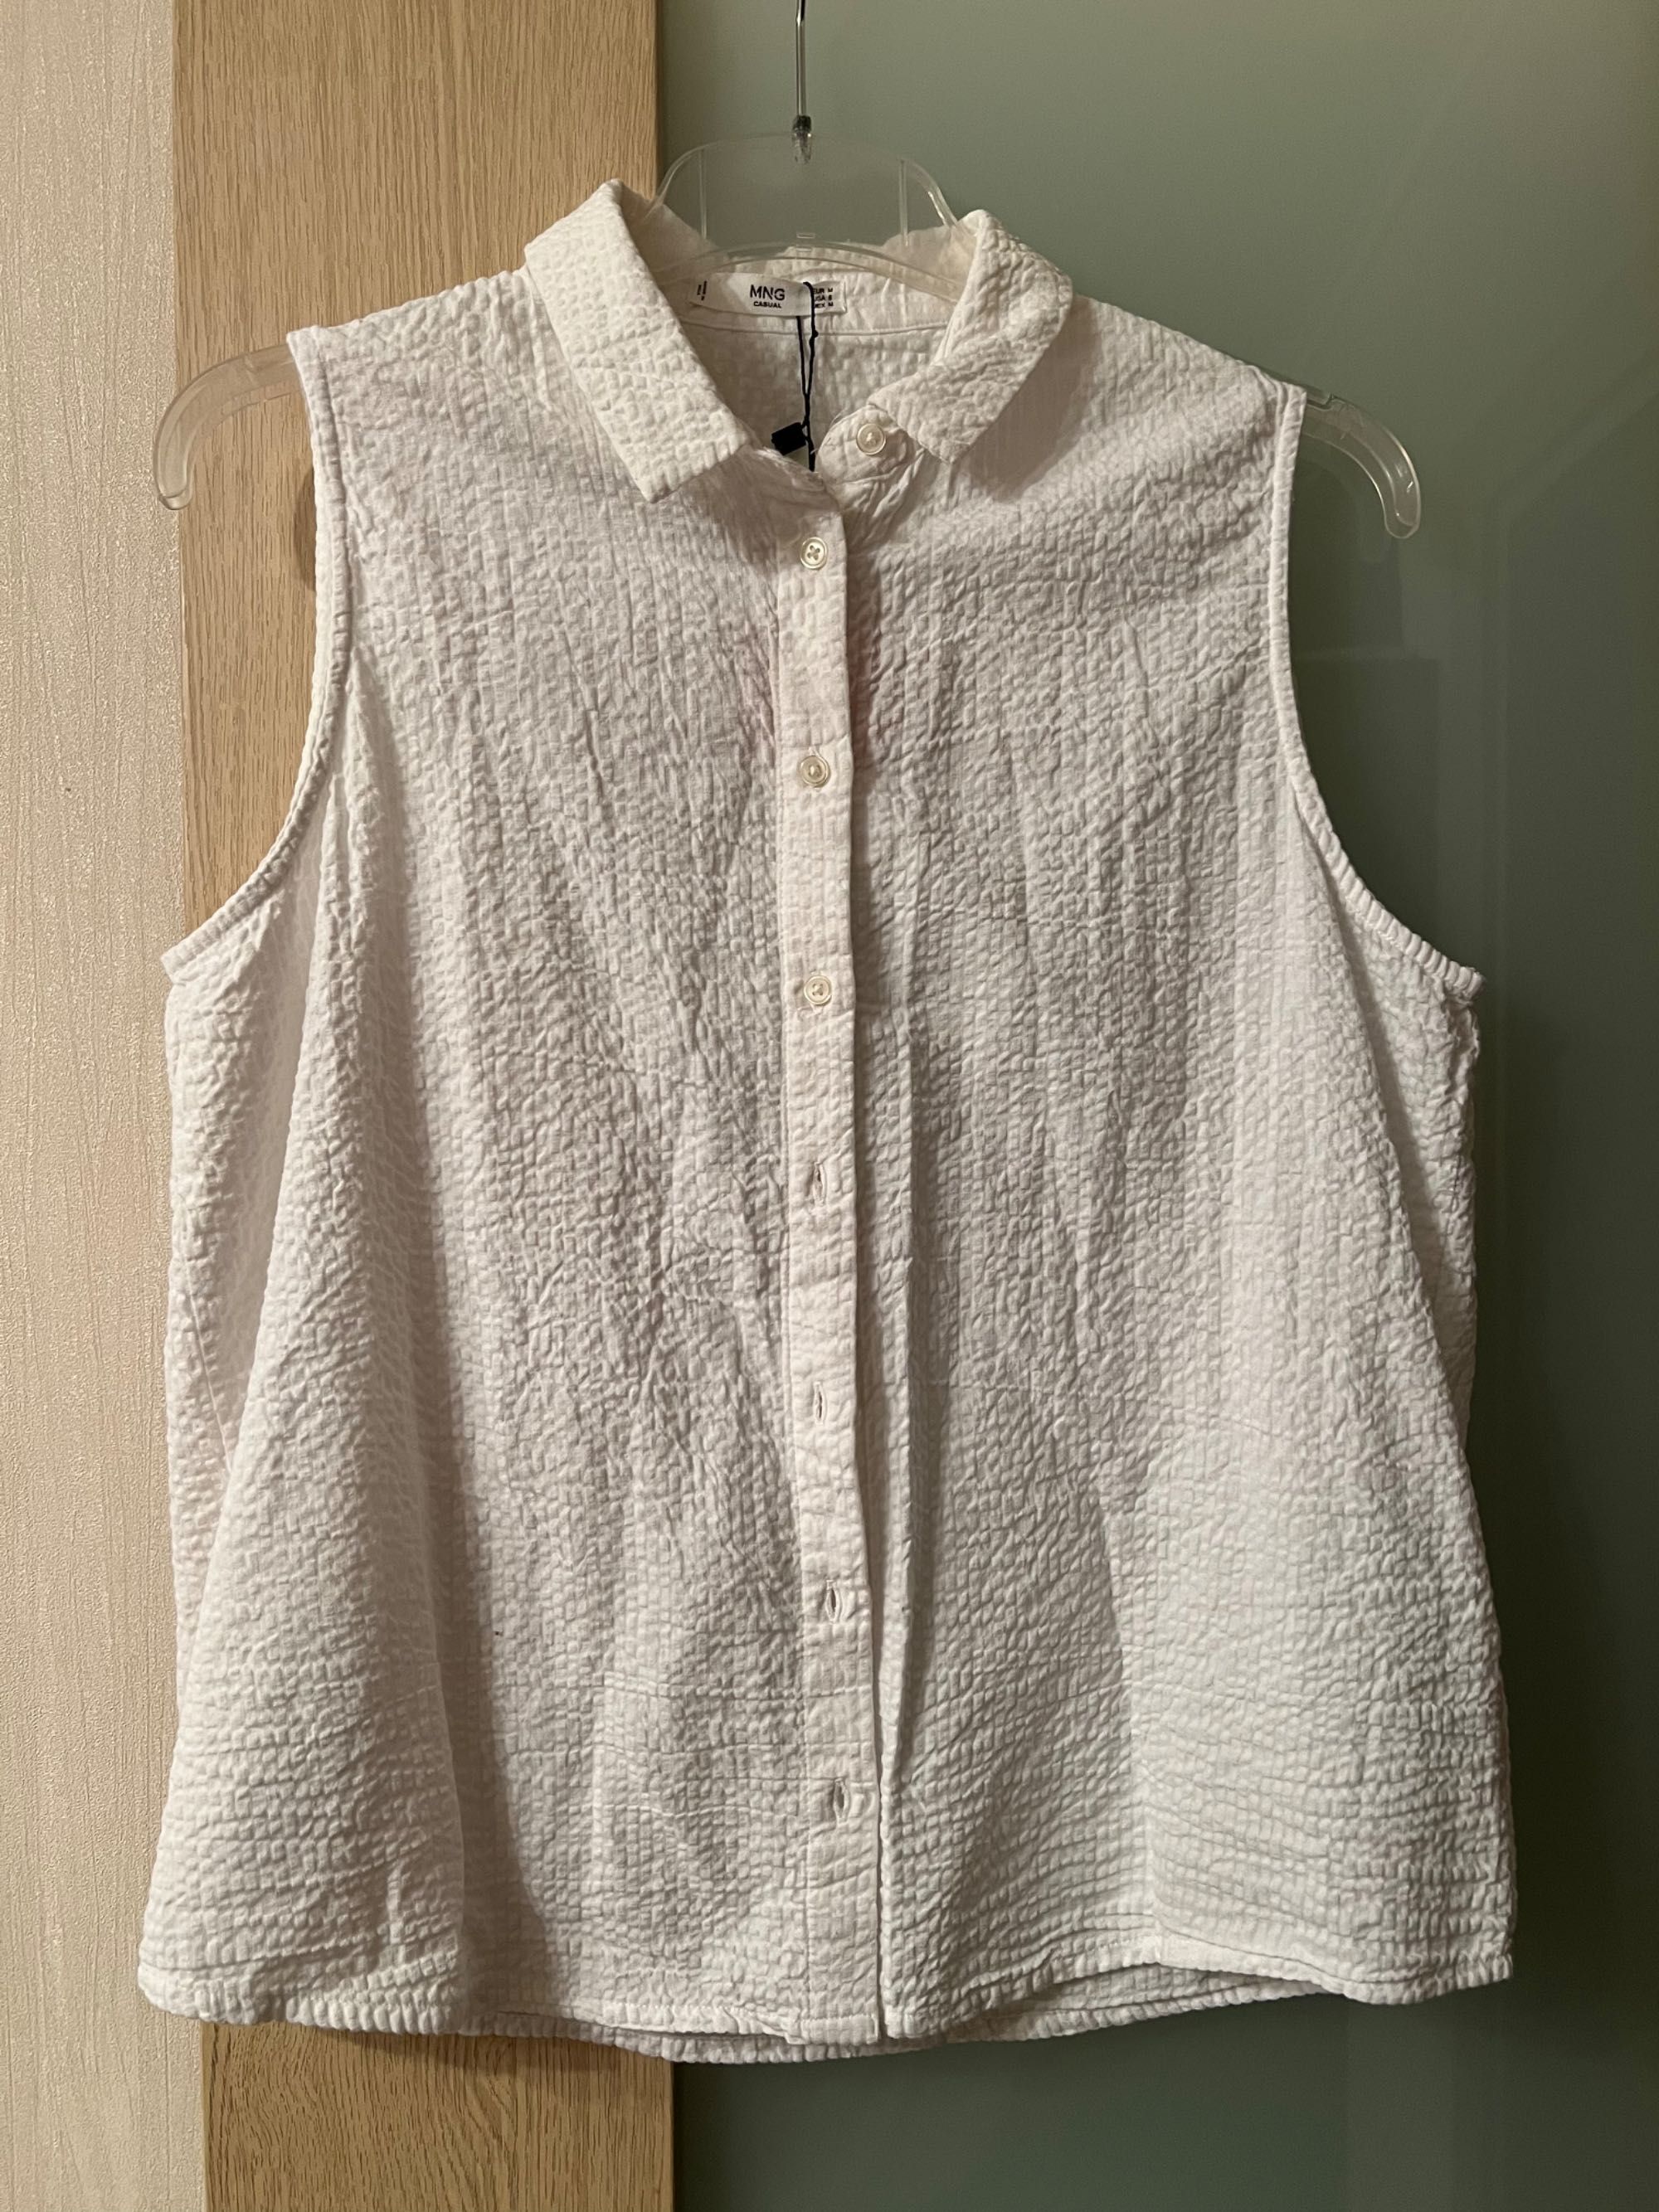 Женская летняя кофточка/рубашка Mango размера М